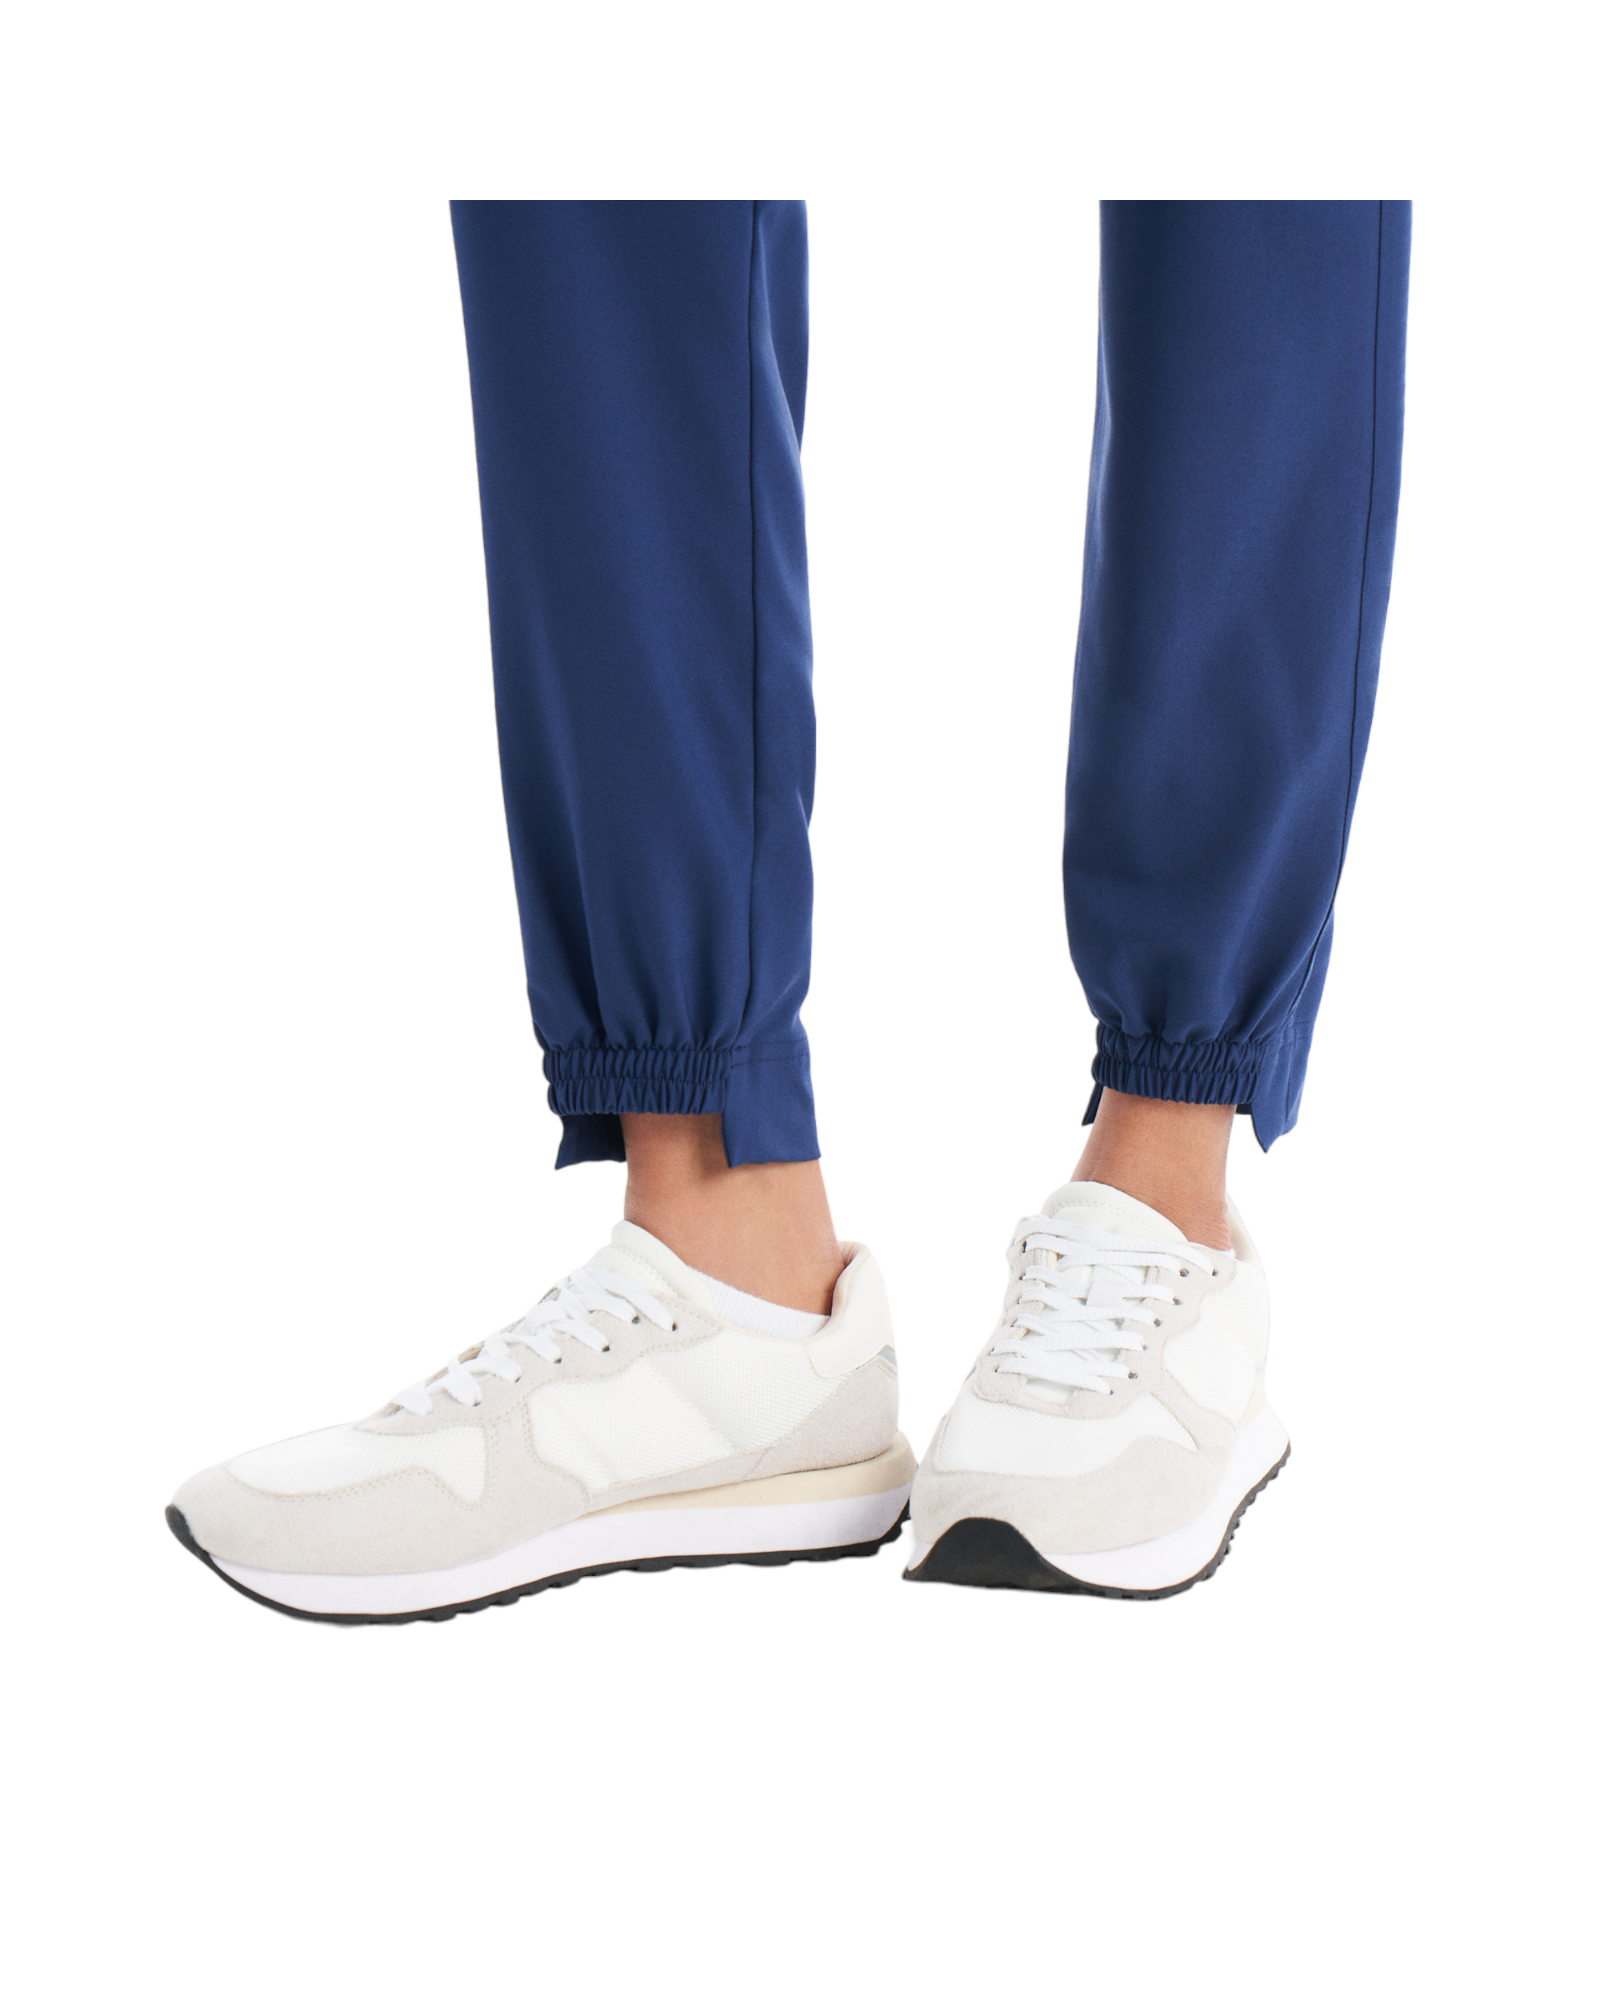 Pantalon de travail jogger hybride pour femme White Cross CRFT #WB415  bas de la jambe couleur Marine